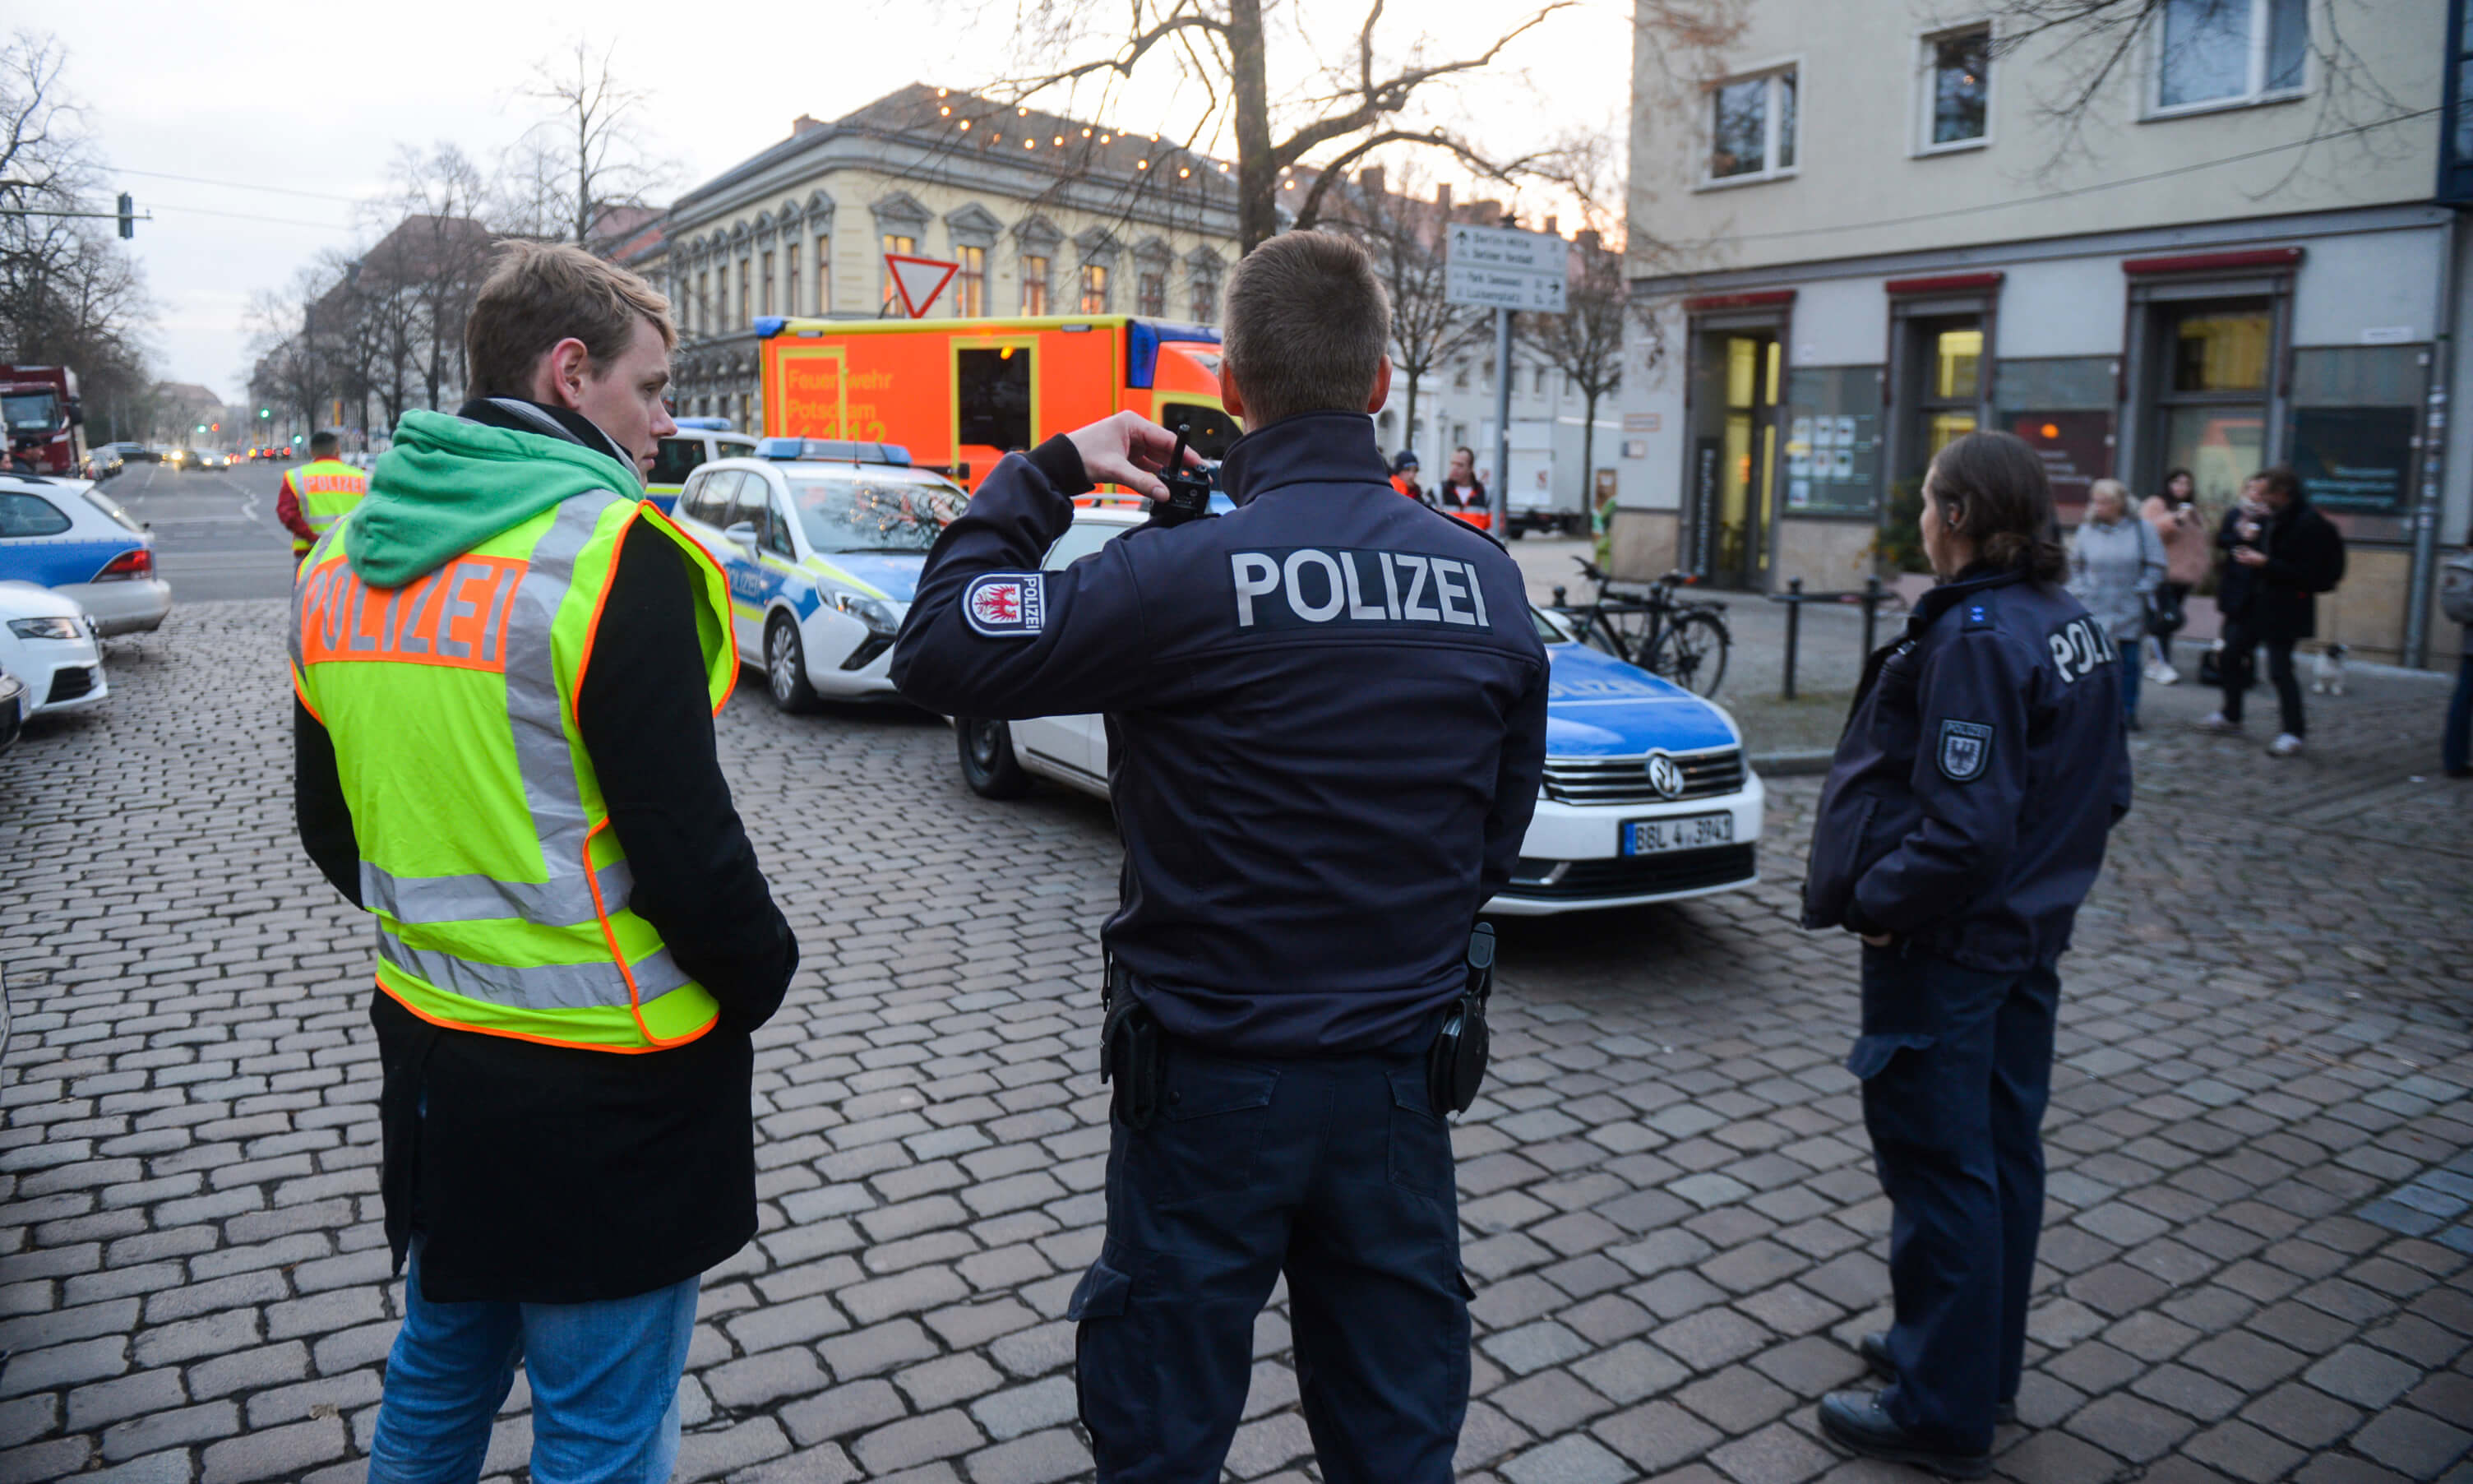 Policía de Potsdam, Alemania, encuentra artefacto explosivo en mercado de Navidad